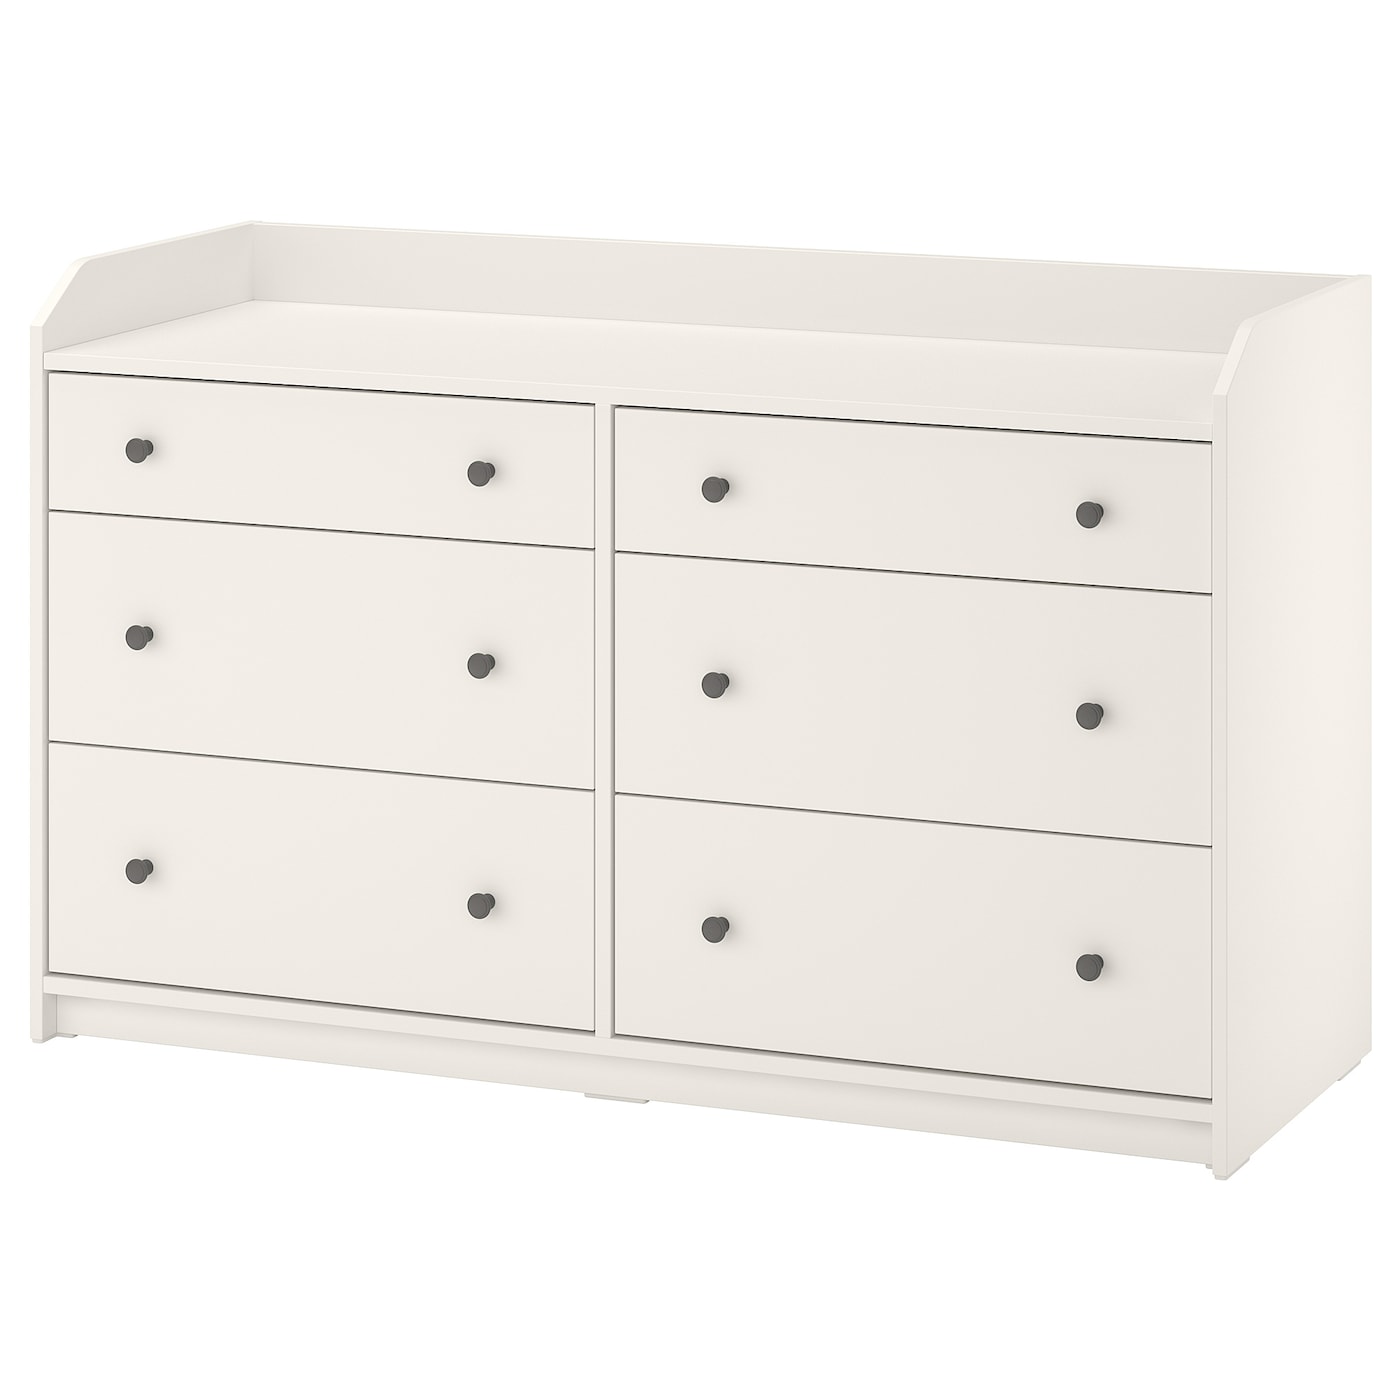 HAUGA chest of 6 drawers white - IKEA